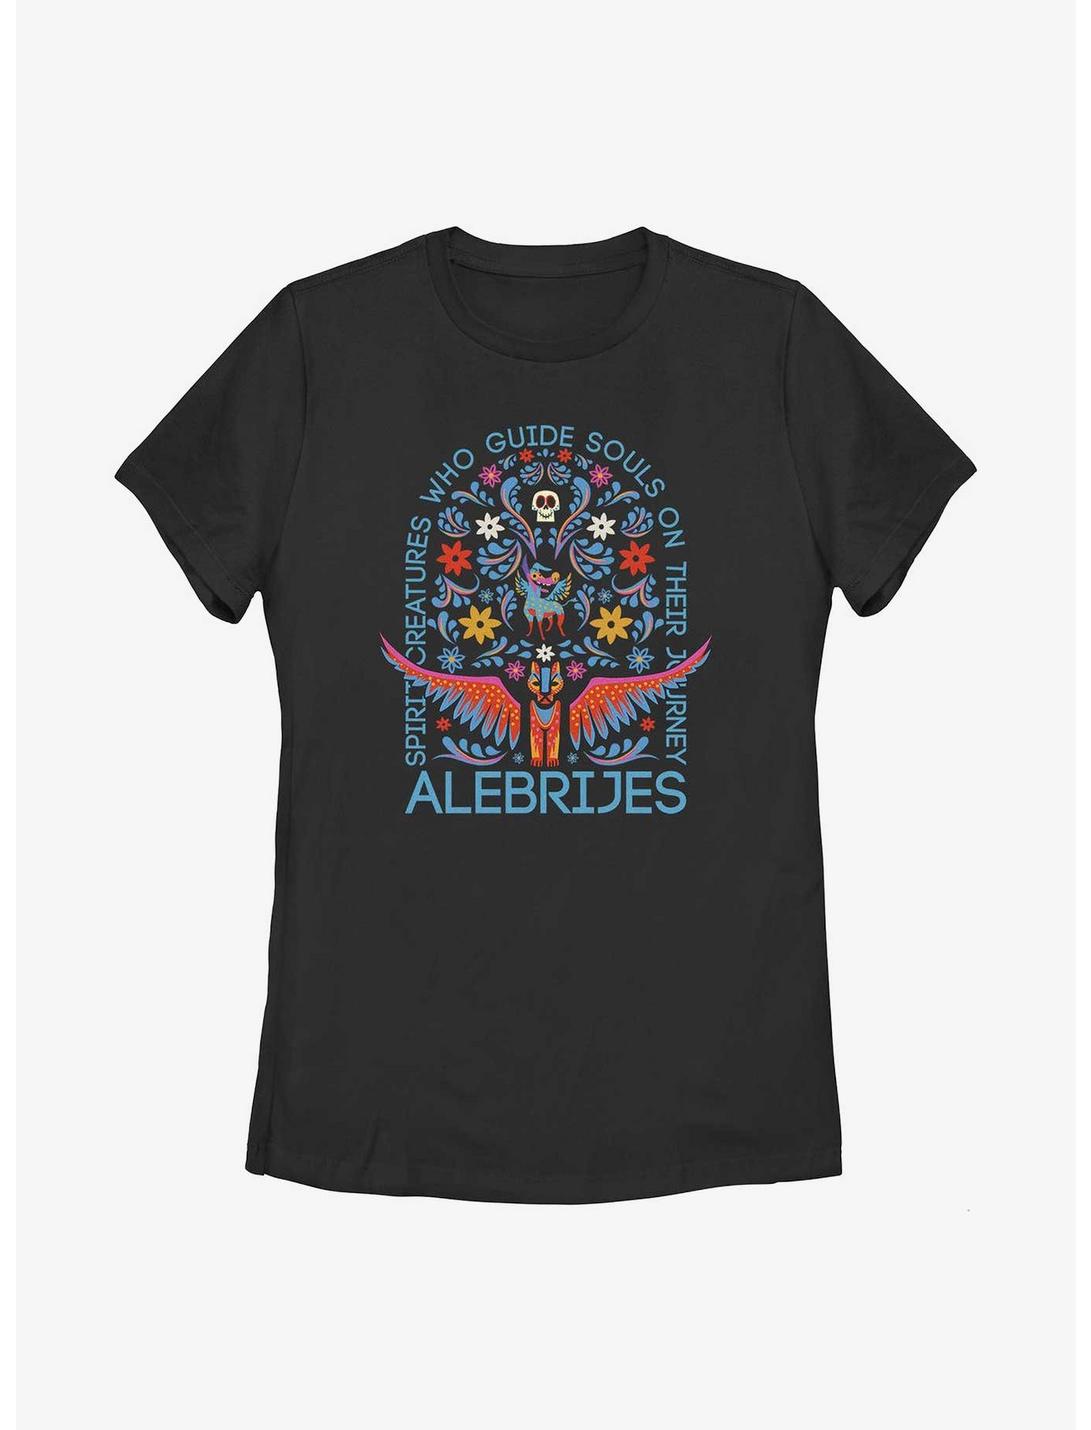 Disney Pixar Coco Alebrijes Spirit Guides Womens T-Shirt, BLACK, hi-res